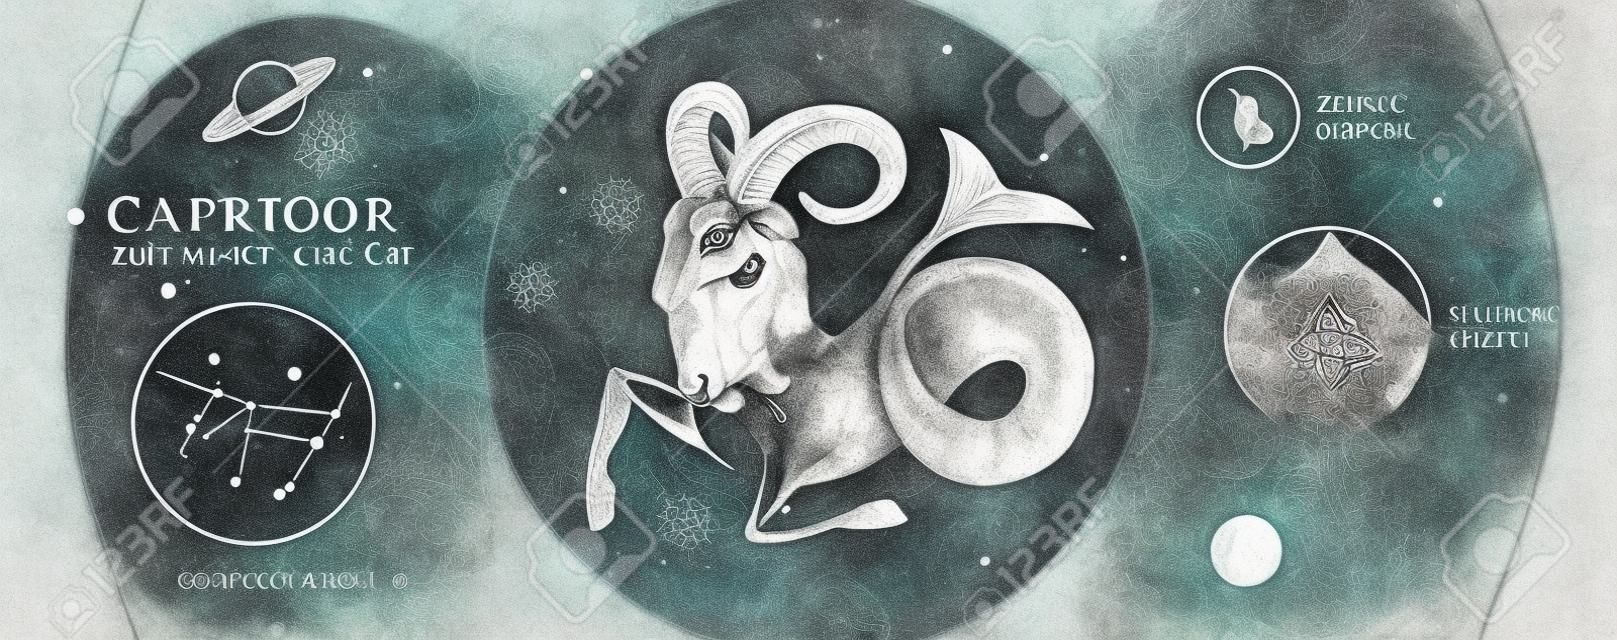 Carta di stregoneria magica moderna con astrologia segno zodiacale Capricorno. Testa di ariete o muflone con disegno a mano realistico. Caratteristica zodiacale